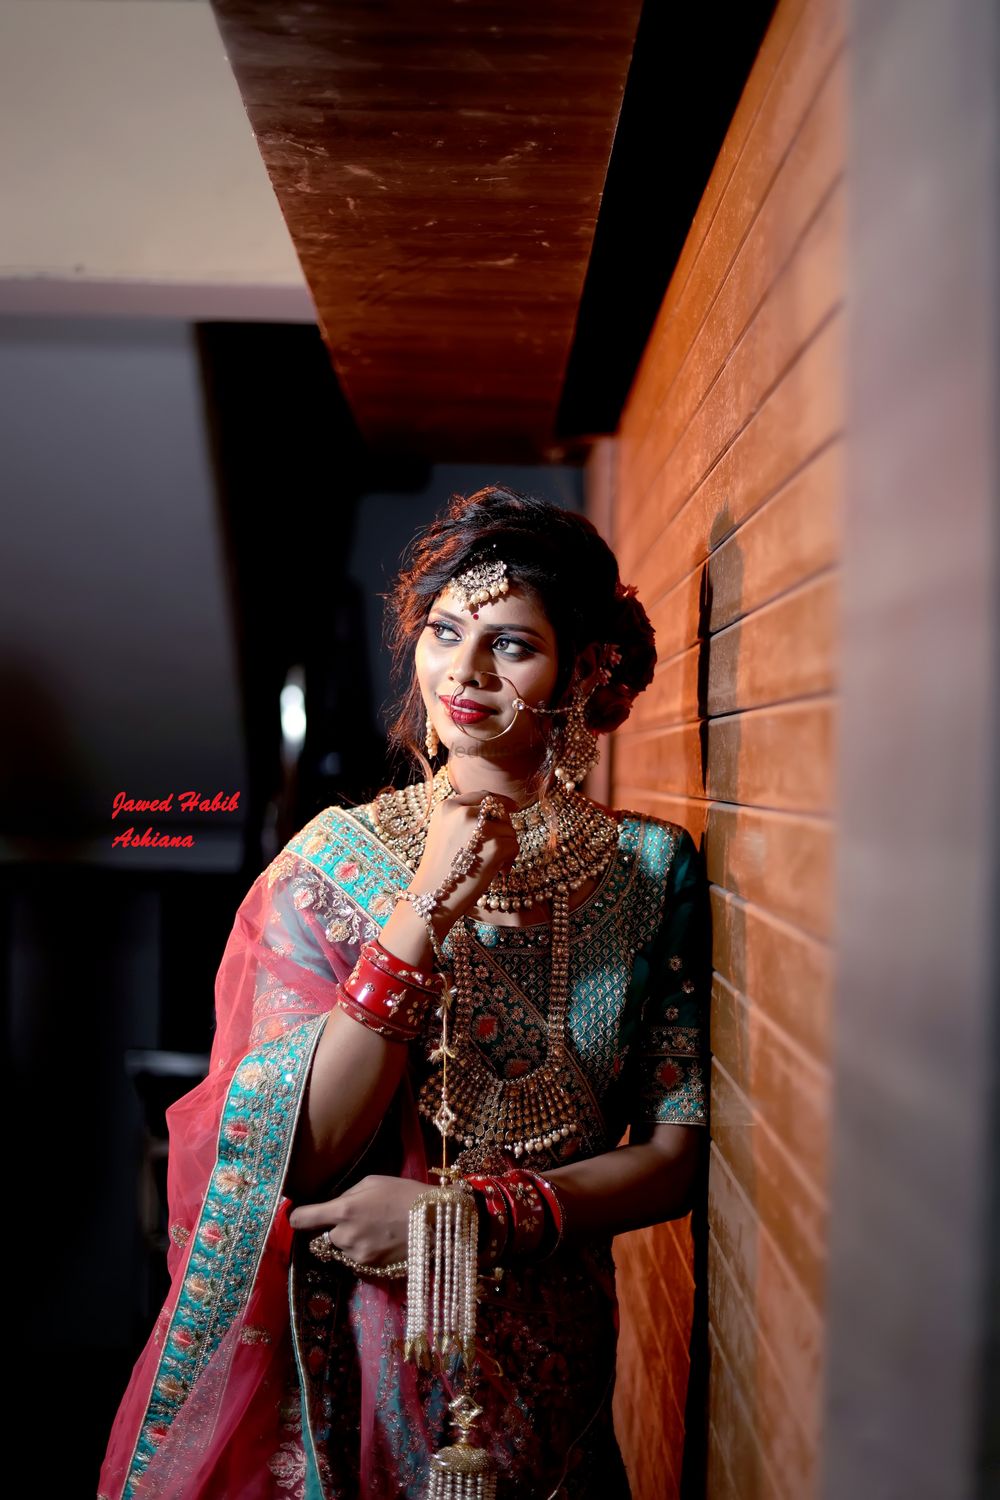 Photo By Jawed Habib Ashiana Patna - Bridal Makeup